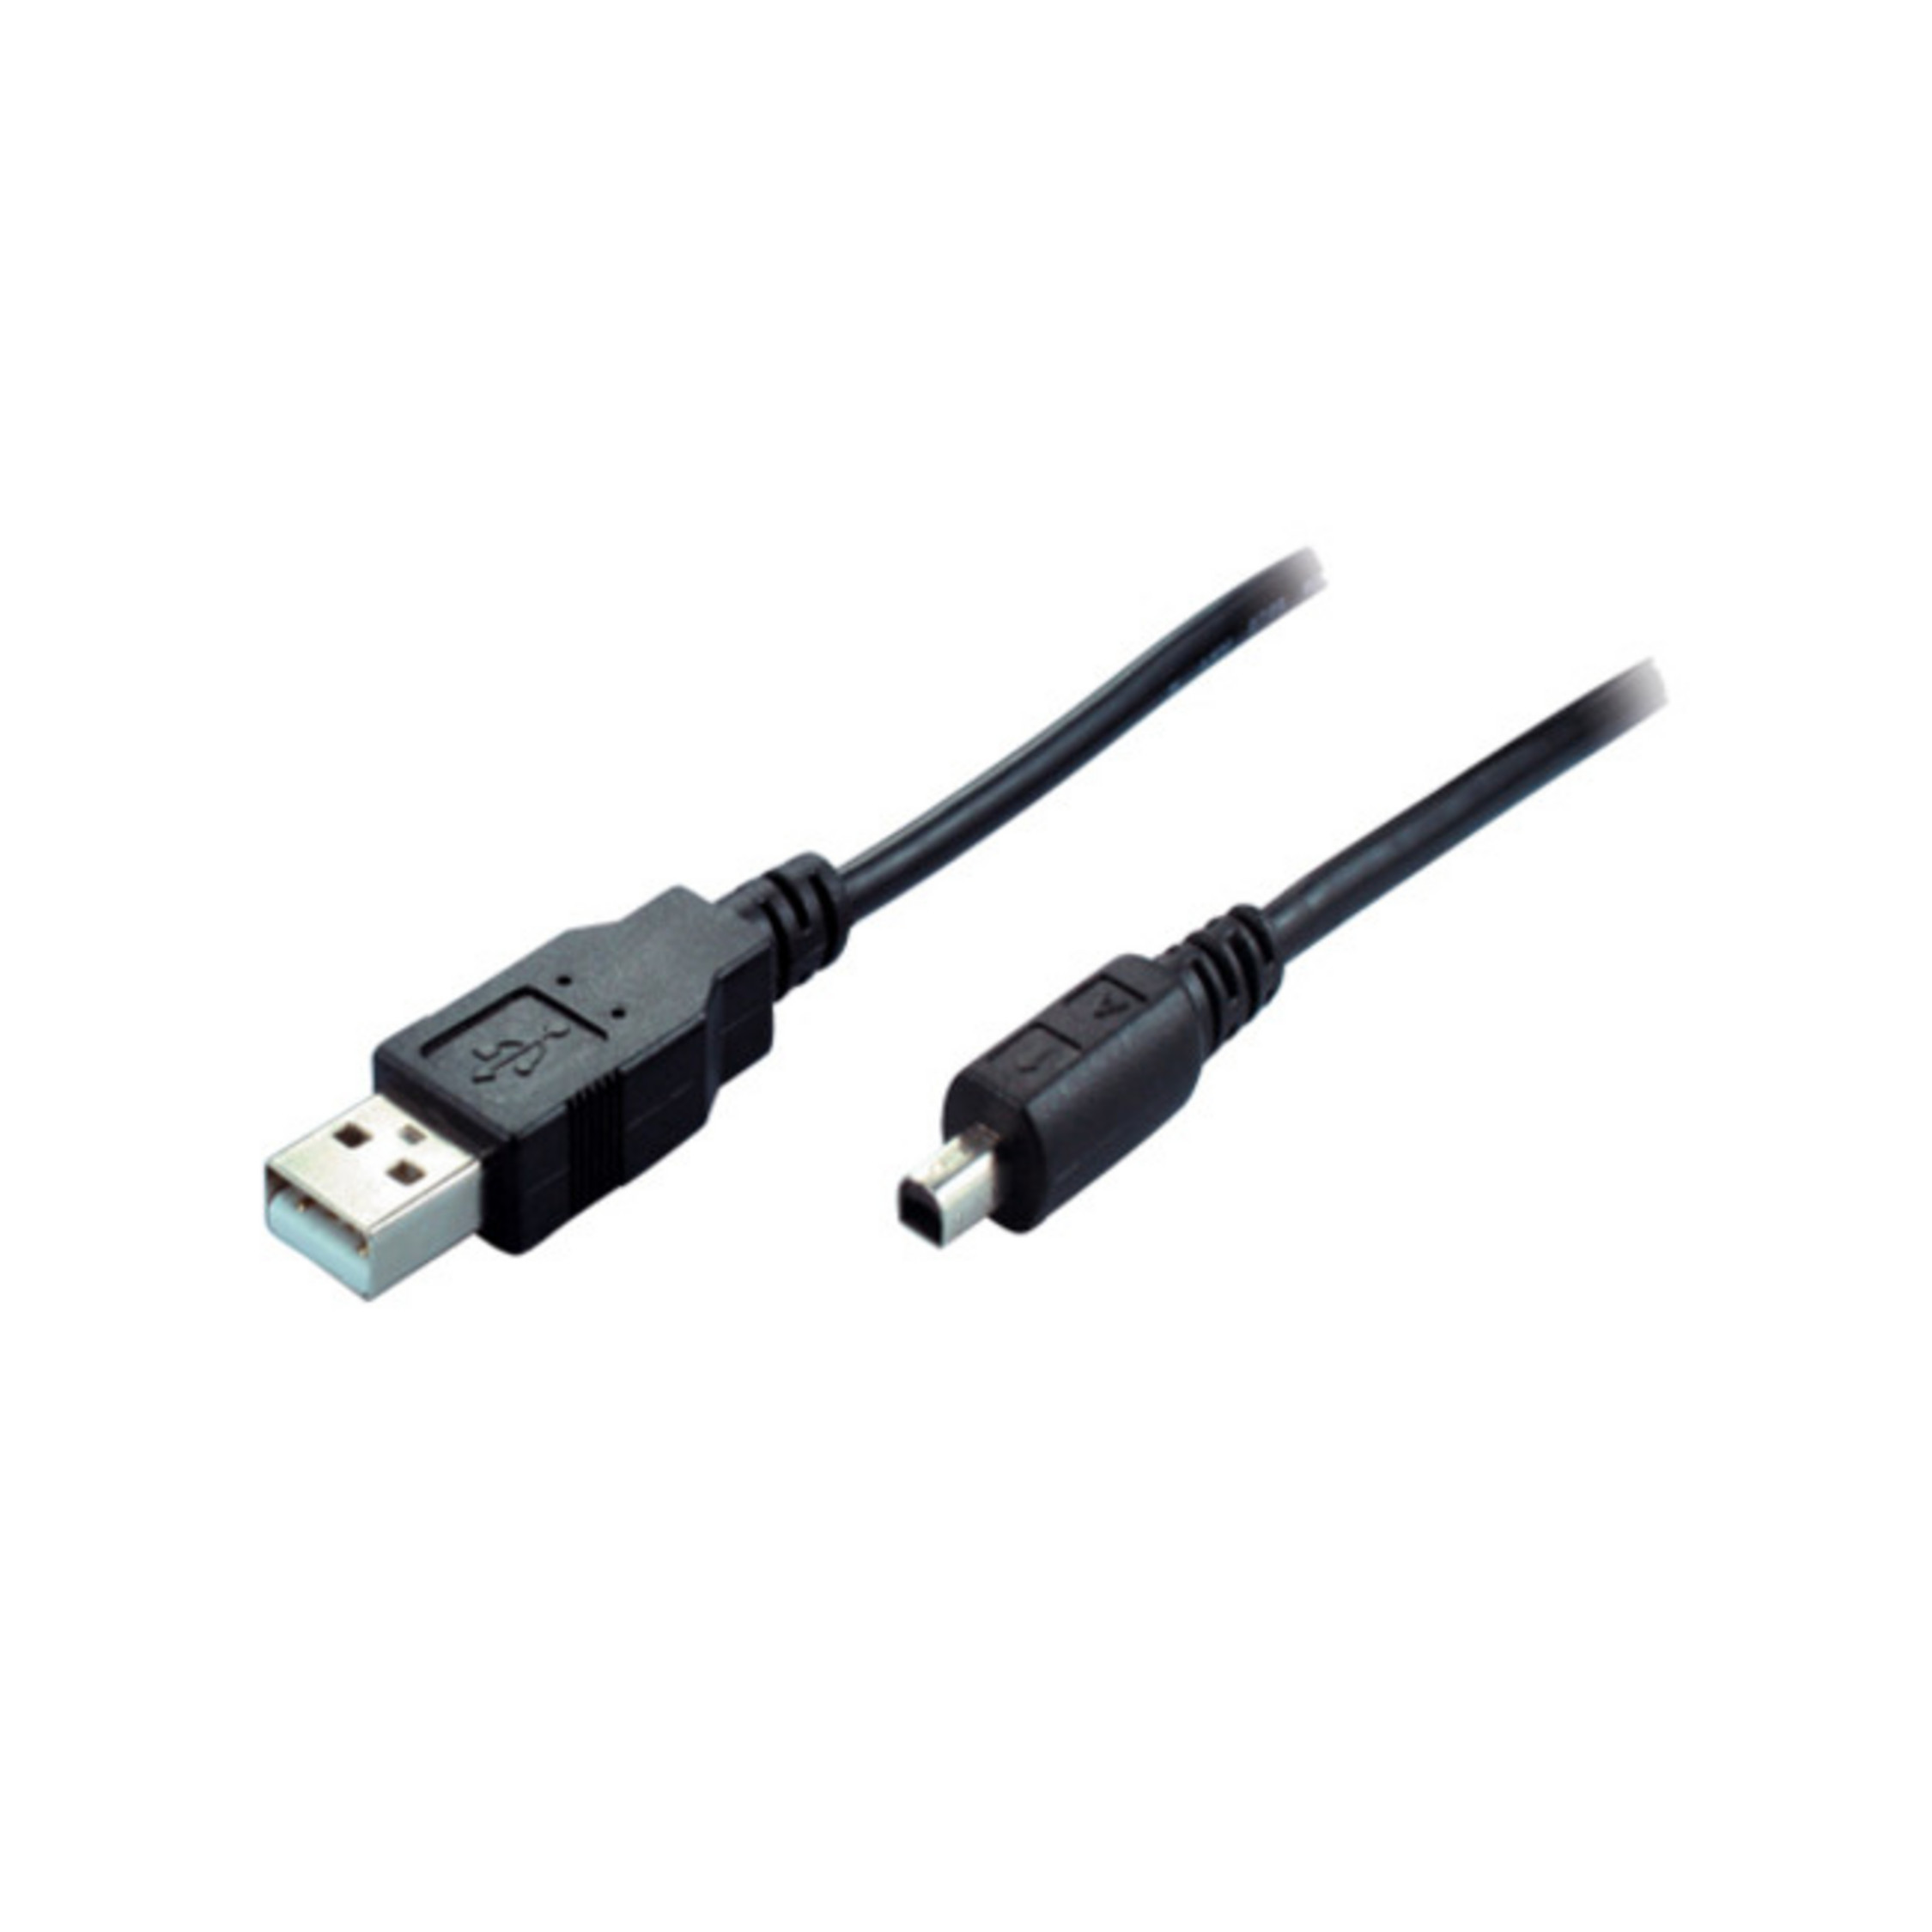 Kabel 2 St m, USB-Mini USB S/CONN Schwarz MAXIMUM Kabel, CONNECTIVITY 4-pin 2.0 2m, USB-A-St/USB-B-Mini